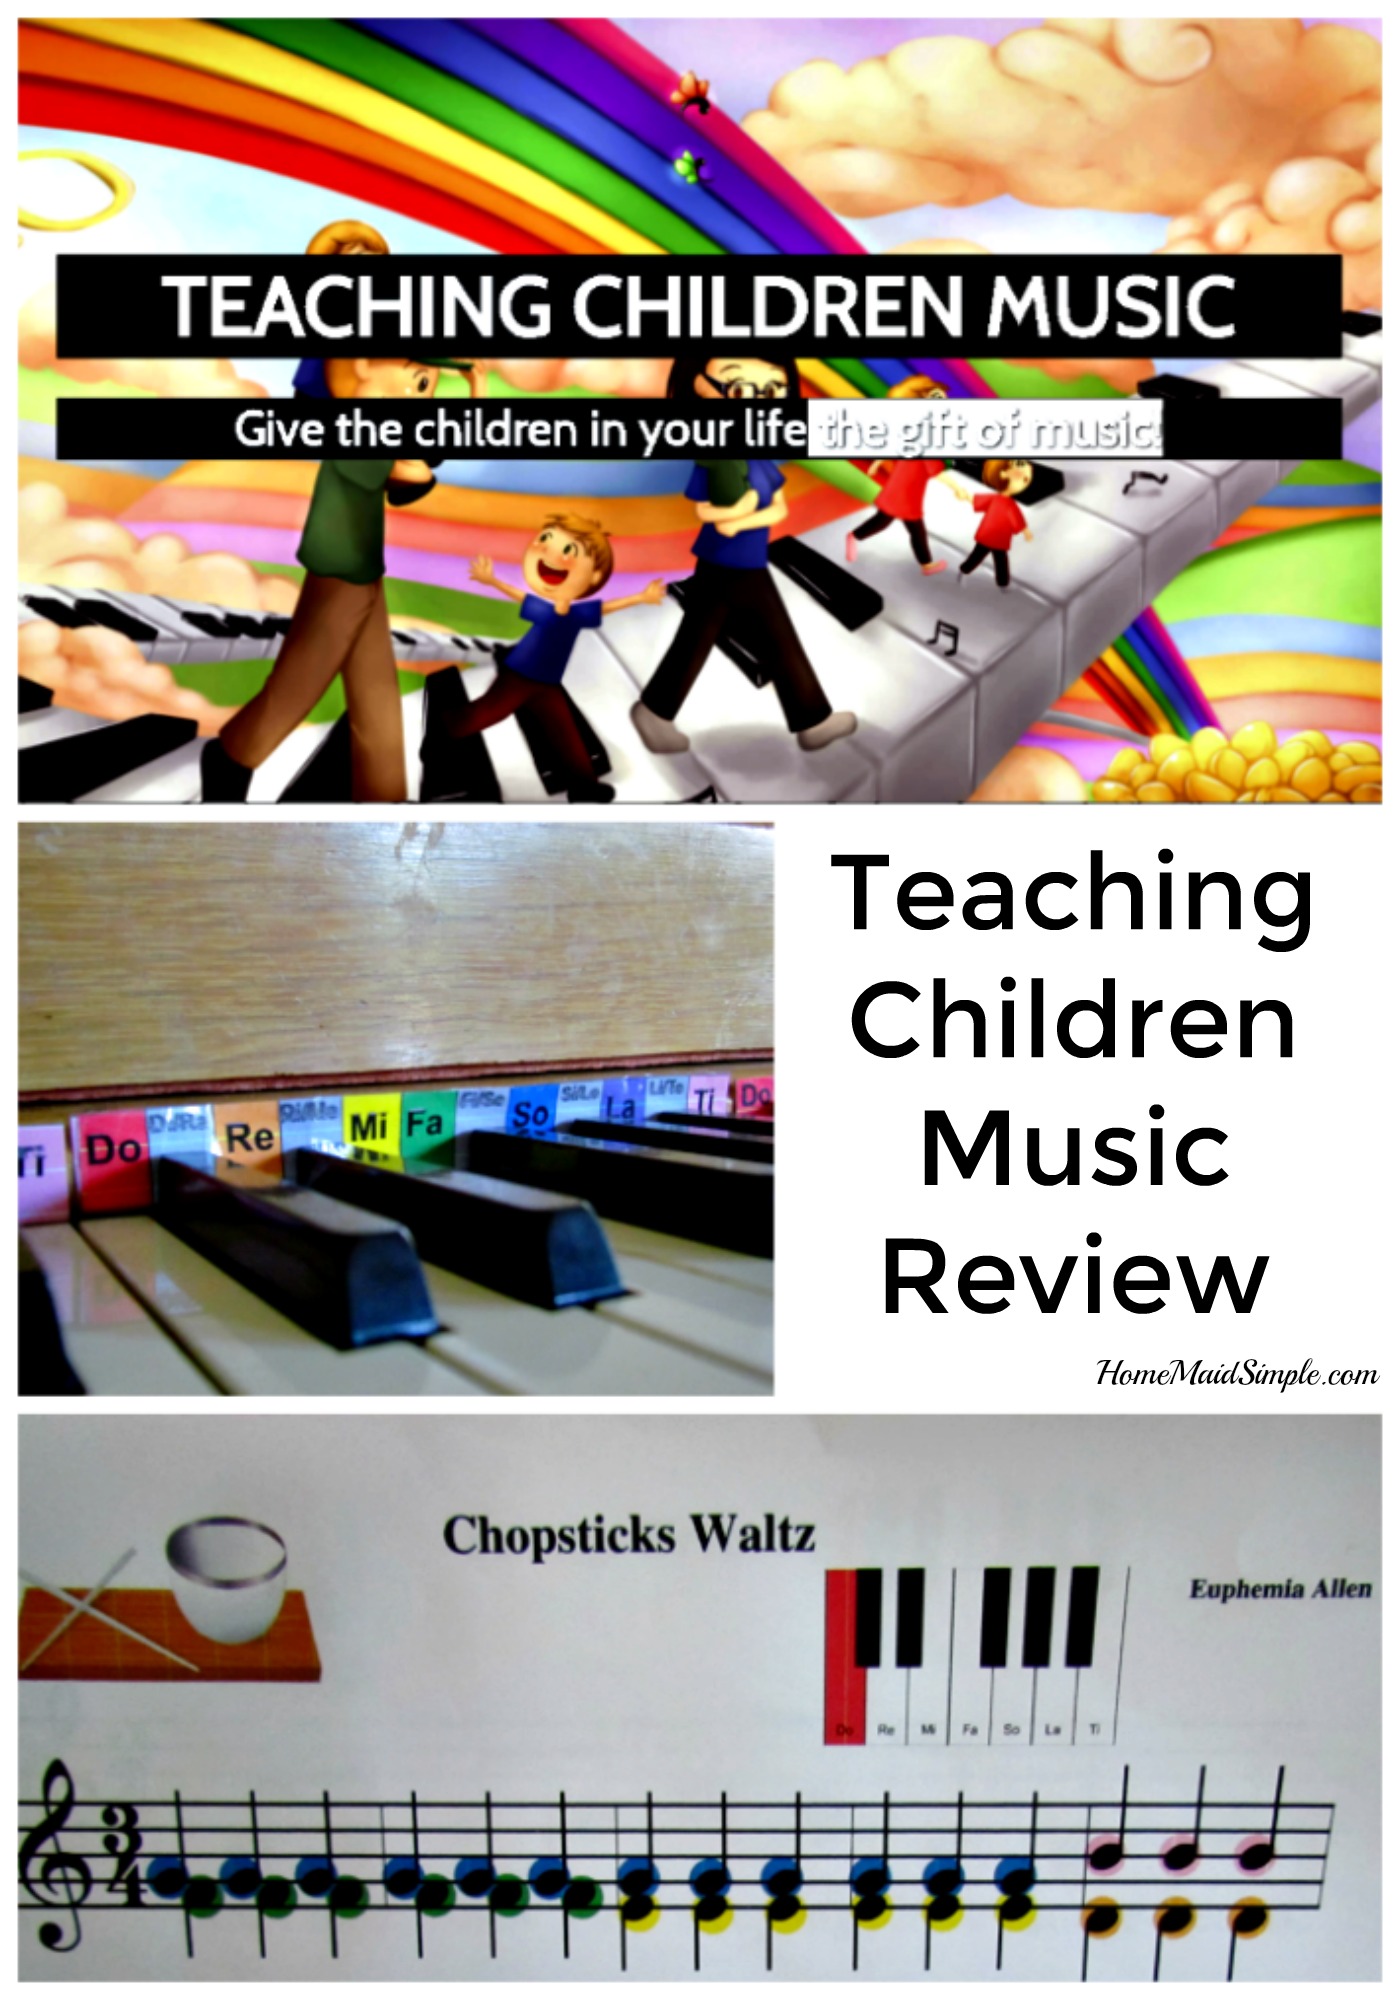 We LOVE Teaching-Children-Music.com